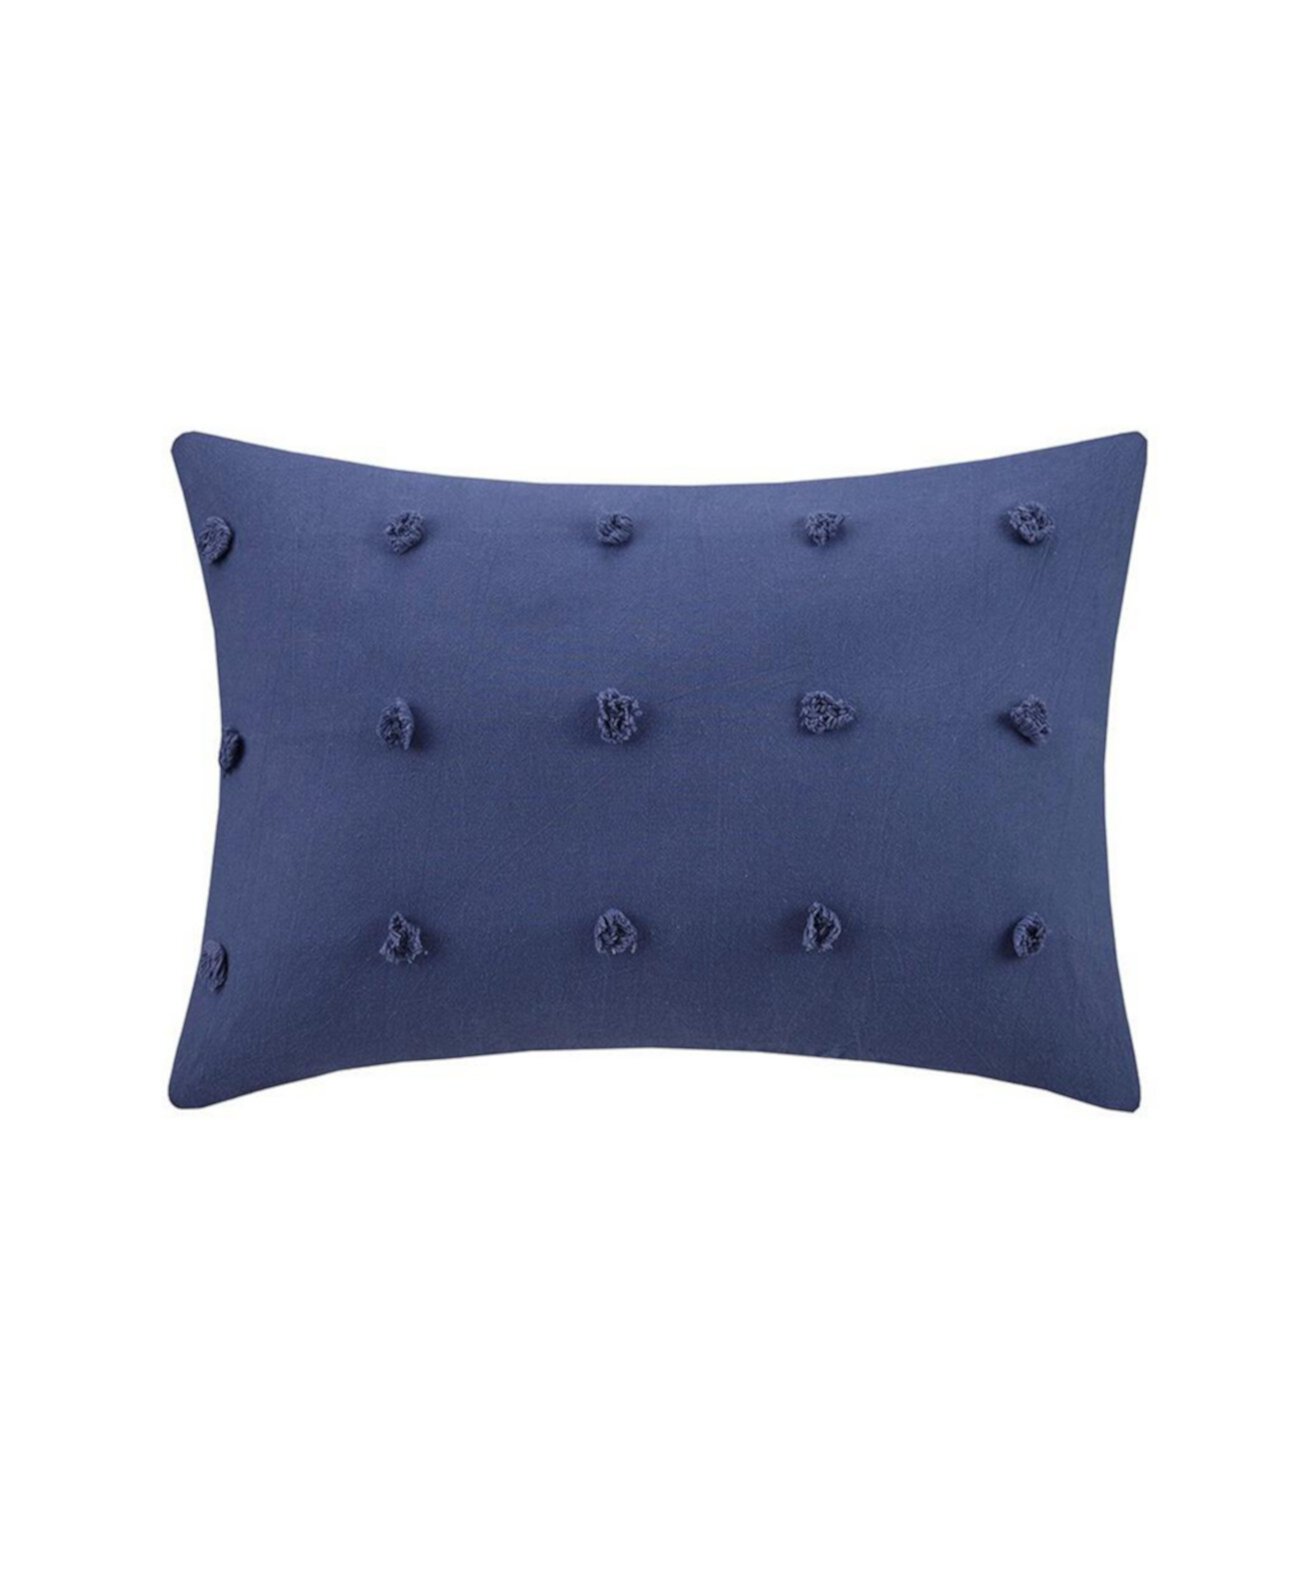 Хлопковая жаккардовая продолговатая подушка с помпонами - синий индиго, 14 X 20 дюймов Gracie Mills